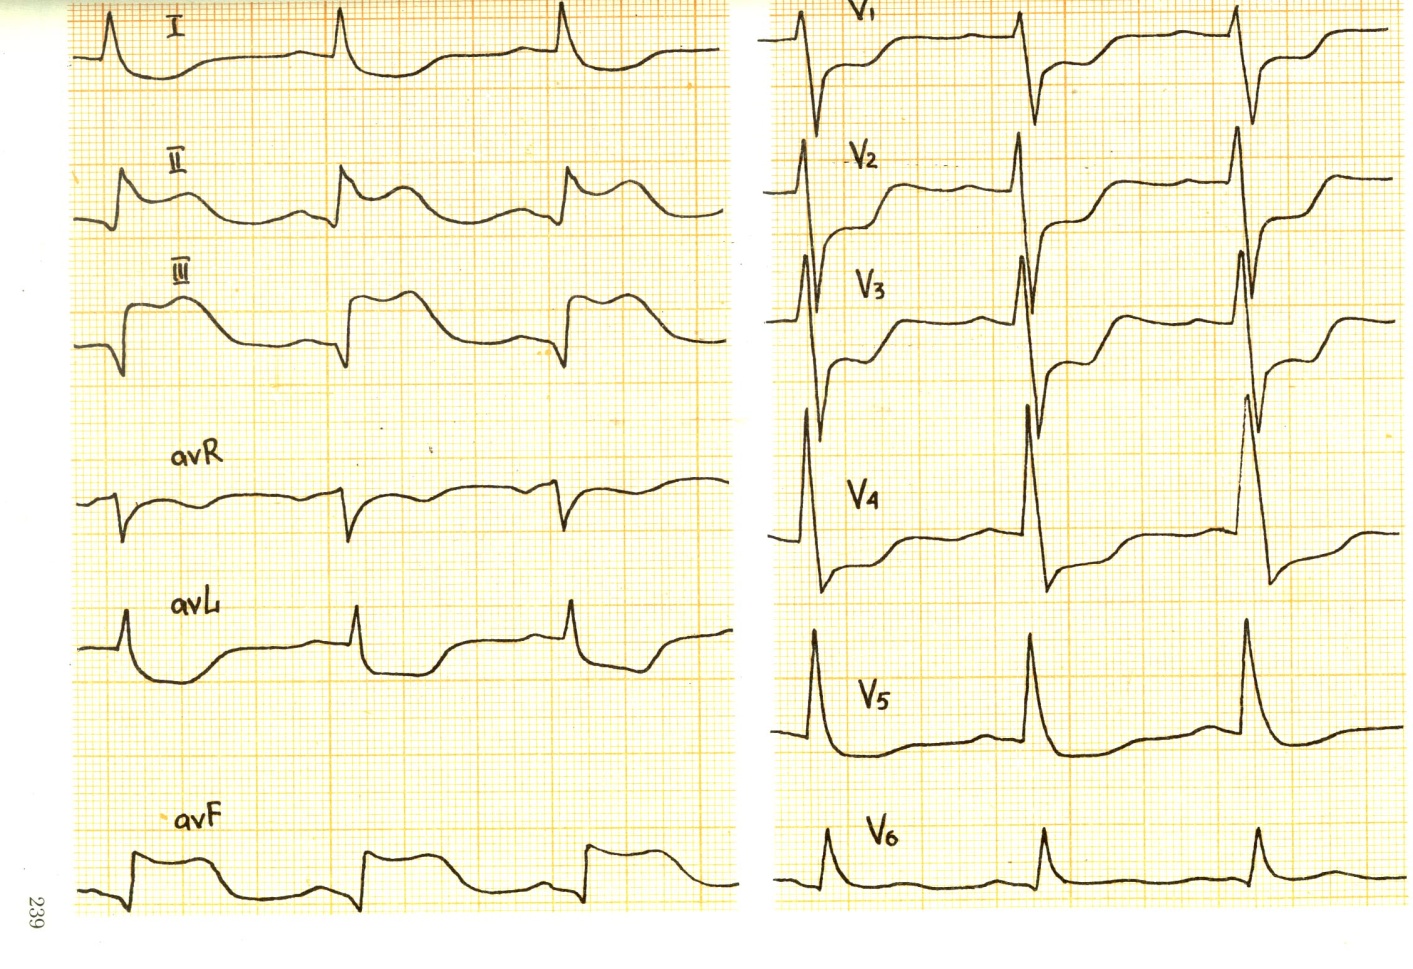 Ишемия боковой стенки. Инфаркт миокарда v1-v3 ЭКГ. ЭКГ при ишемии и инфаркта миокарда. Инфаркт в 3 отведении на ЭКГ. Инфаркт миокарда с зубцом q на ЭКГ.